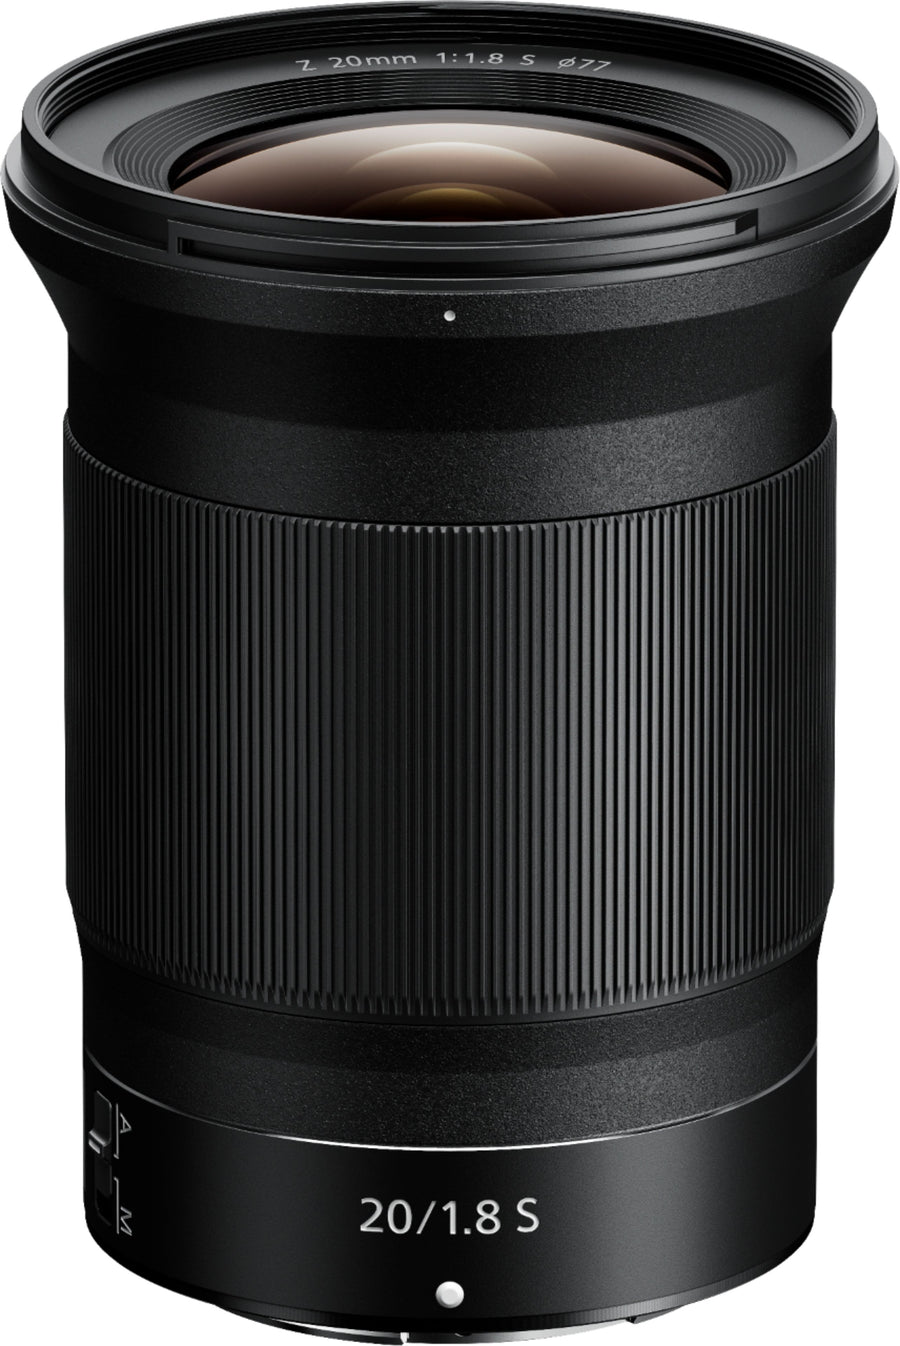 NIKKOR Z 20mm f/1.8 S Wide-Angle Prime Lens for Nikon Z Cameras - Black_0